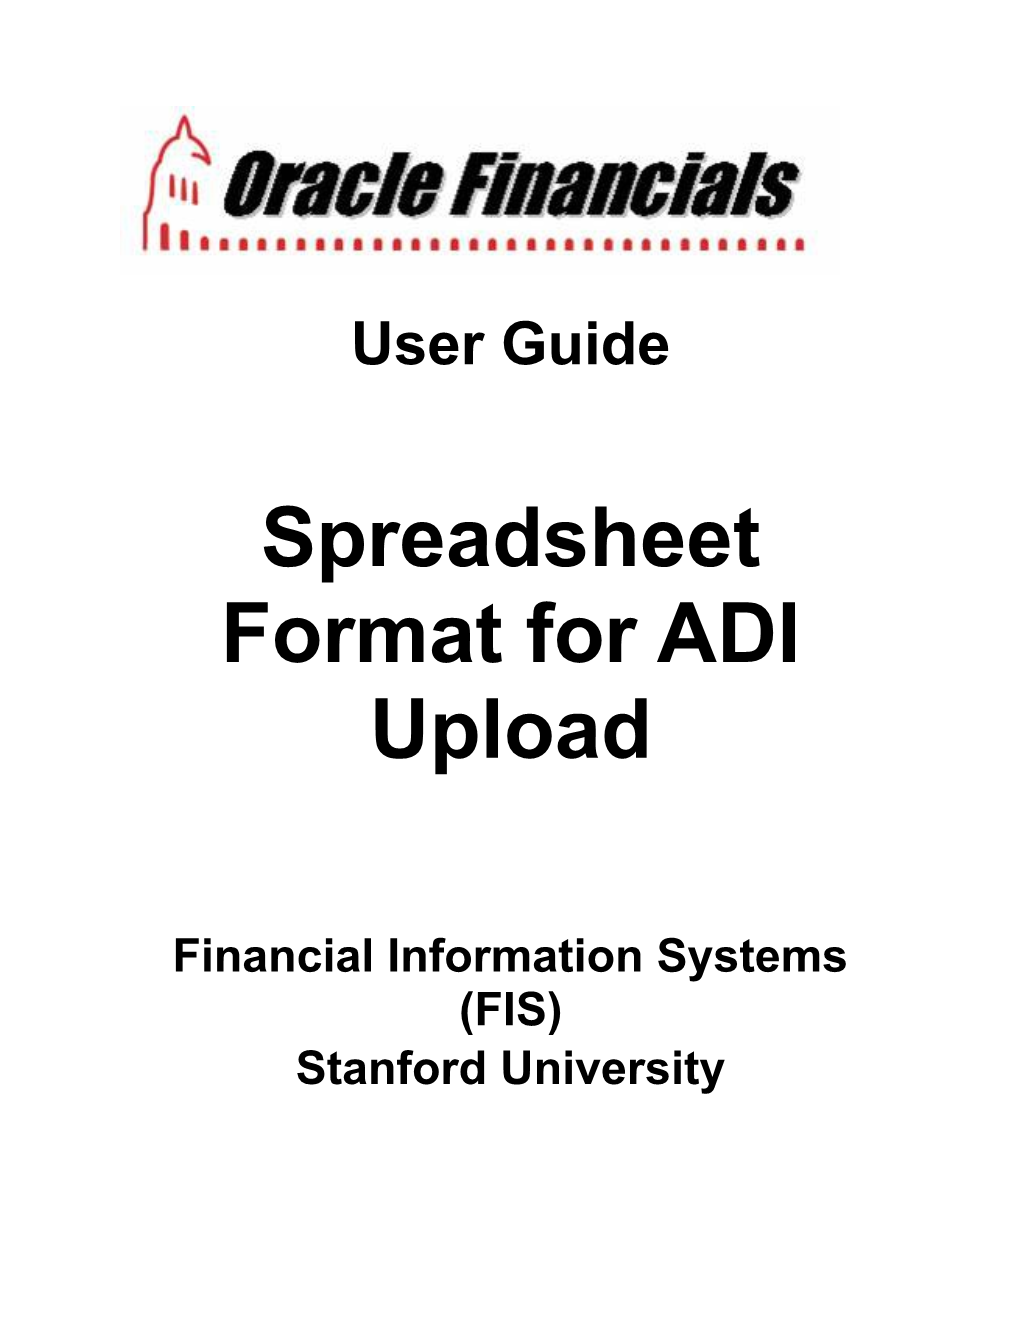 Spreadsheet Format for ADI Upload